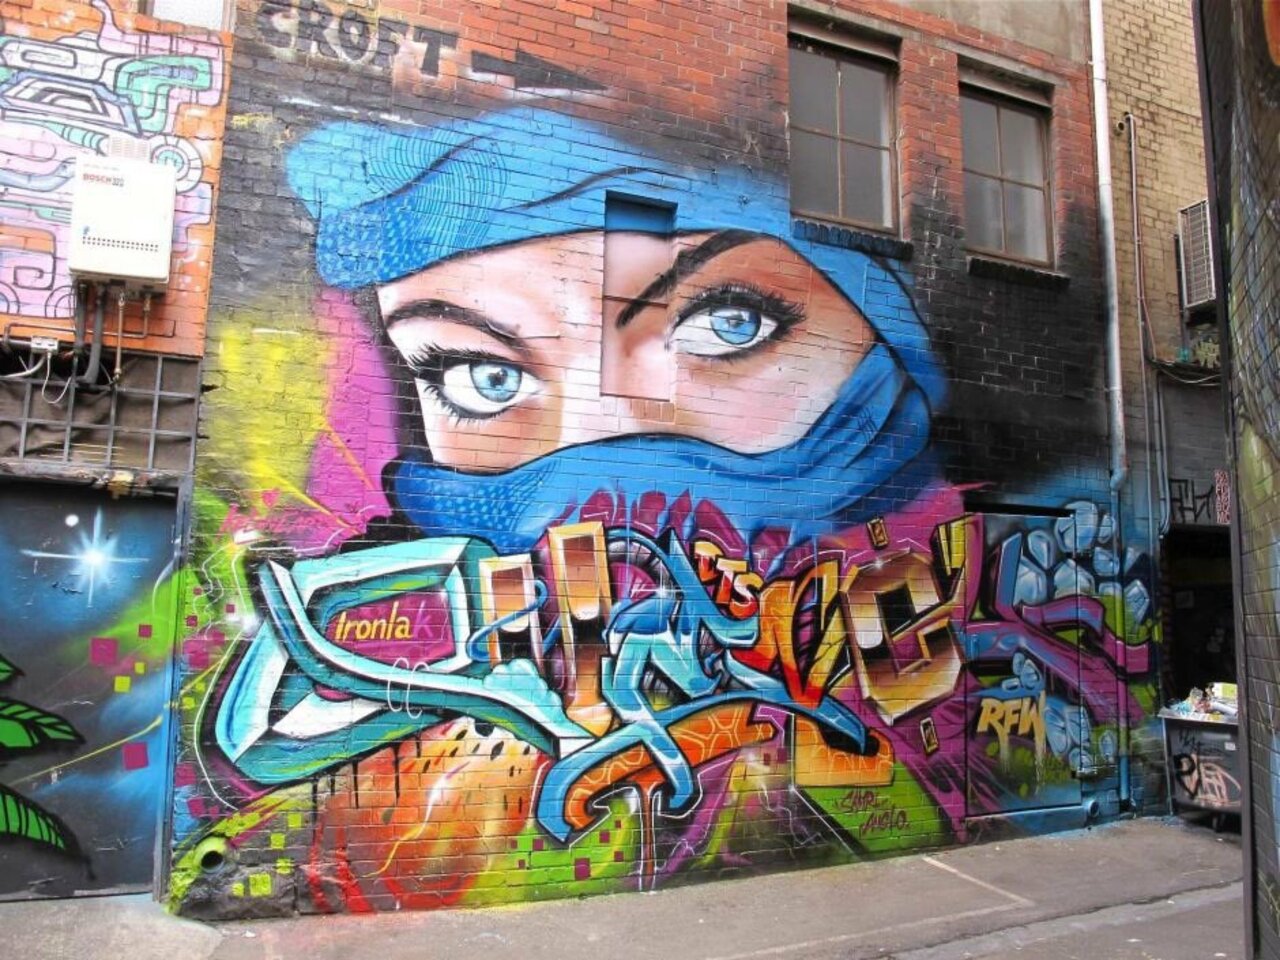 Croft Lane, Melbourne, Australia #mural #Streetart #urbanart #graffiti #art #Melbourne #Australia https://t.co/SA5AVKZaCl